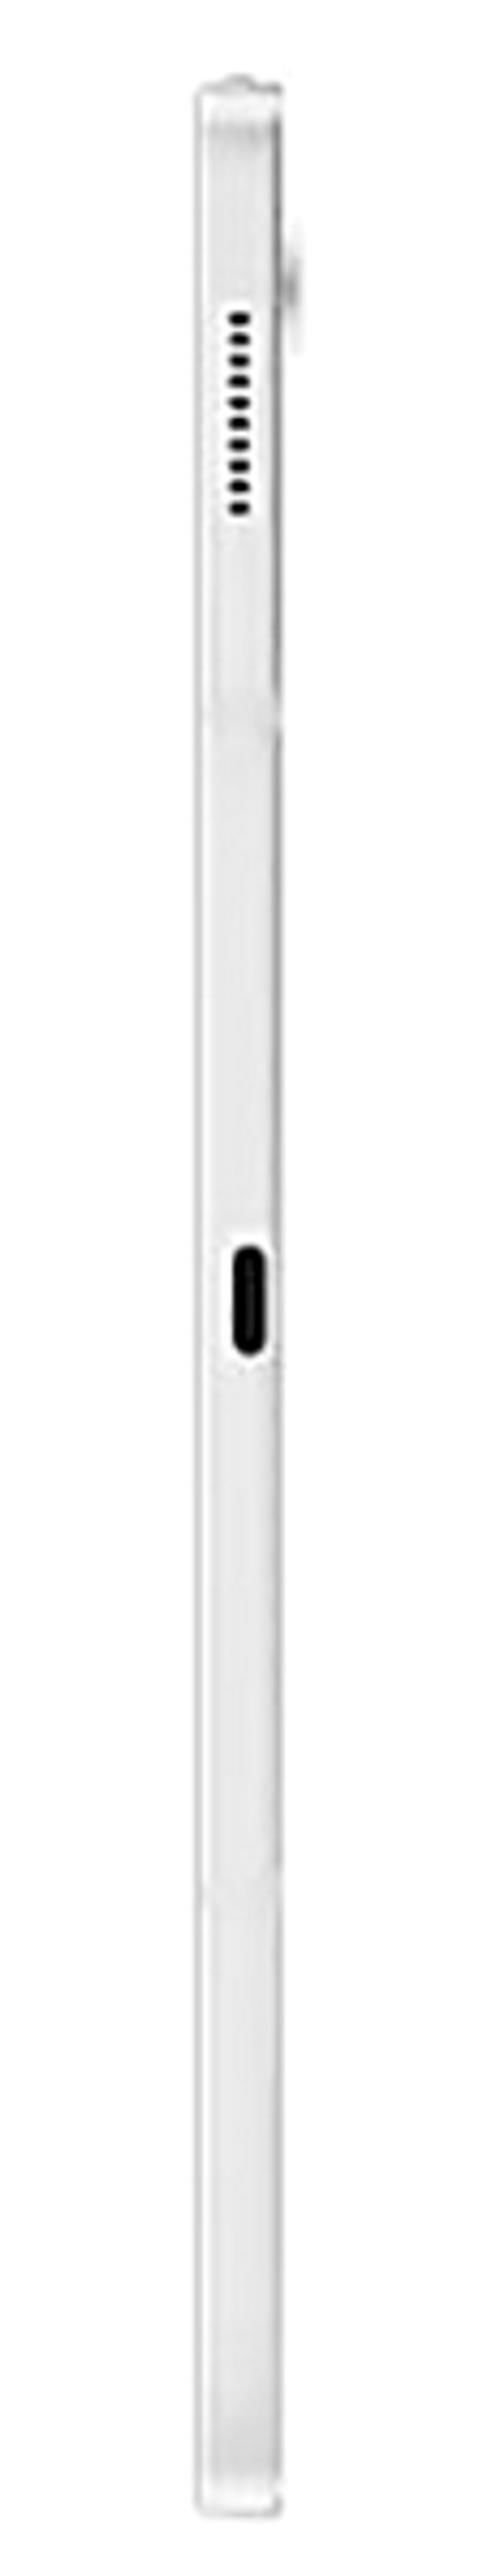 Samsung T733 Tab S7fe / 12.4'' TFT 2560x1600 / Snapdragon 778G / 4GB / 64GB / Wi-Fi / 10090mAh